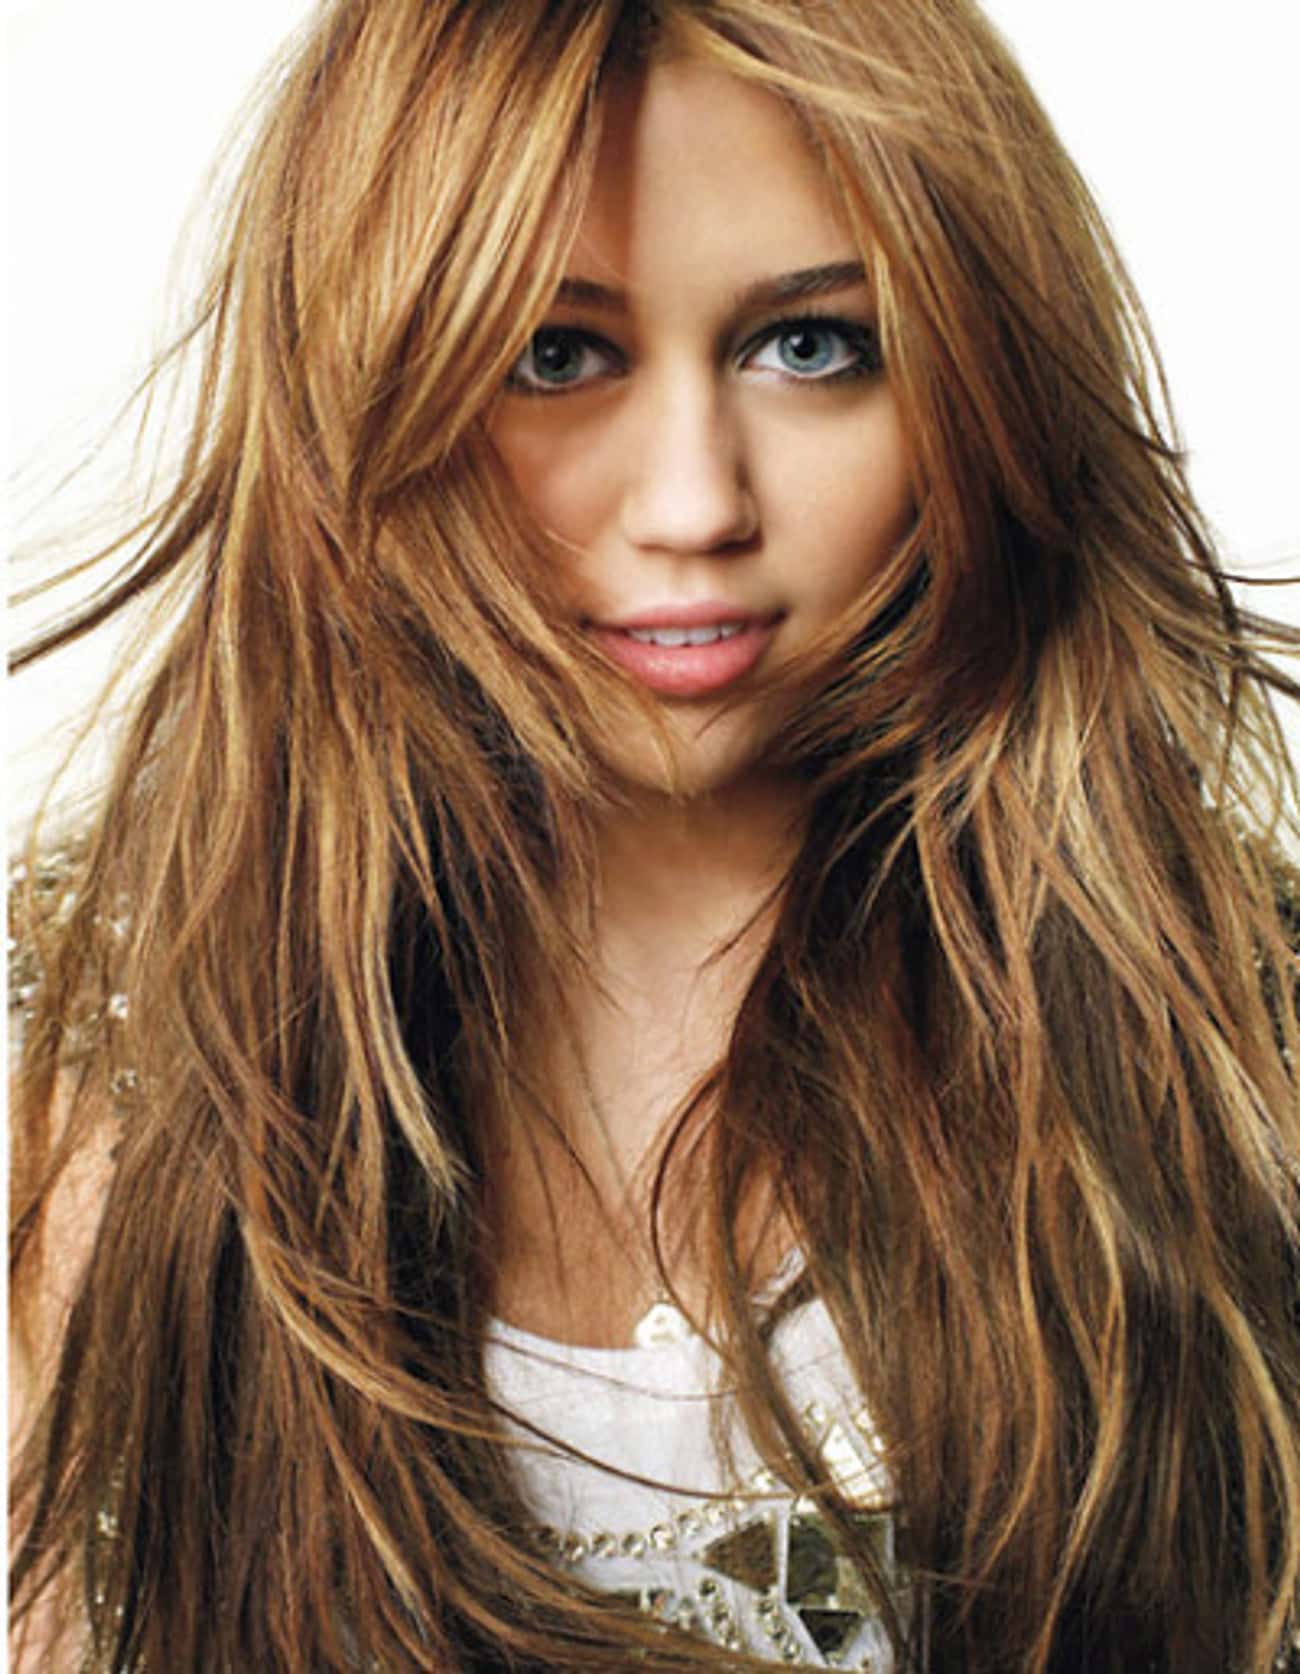 Young Miley Cyrus Closeup Headshot